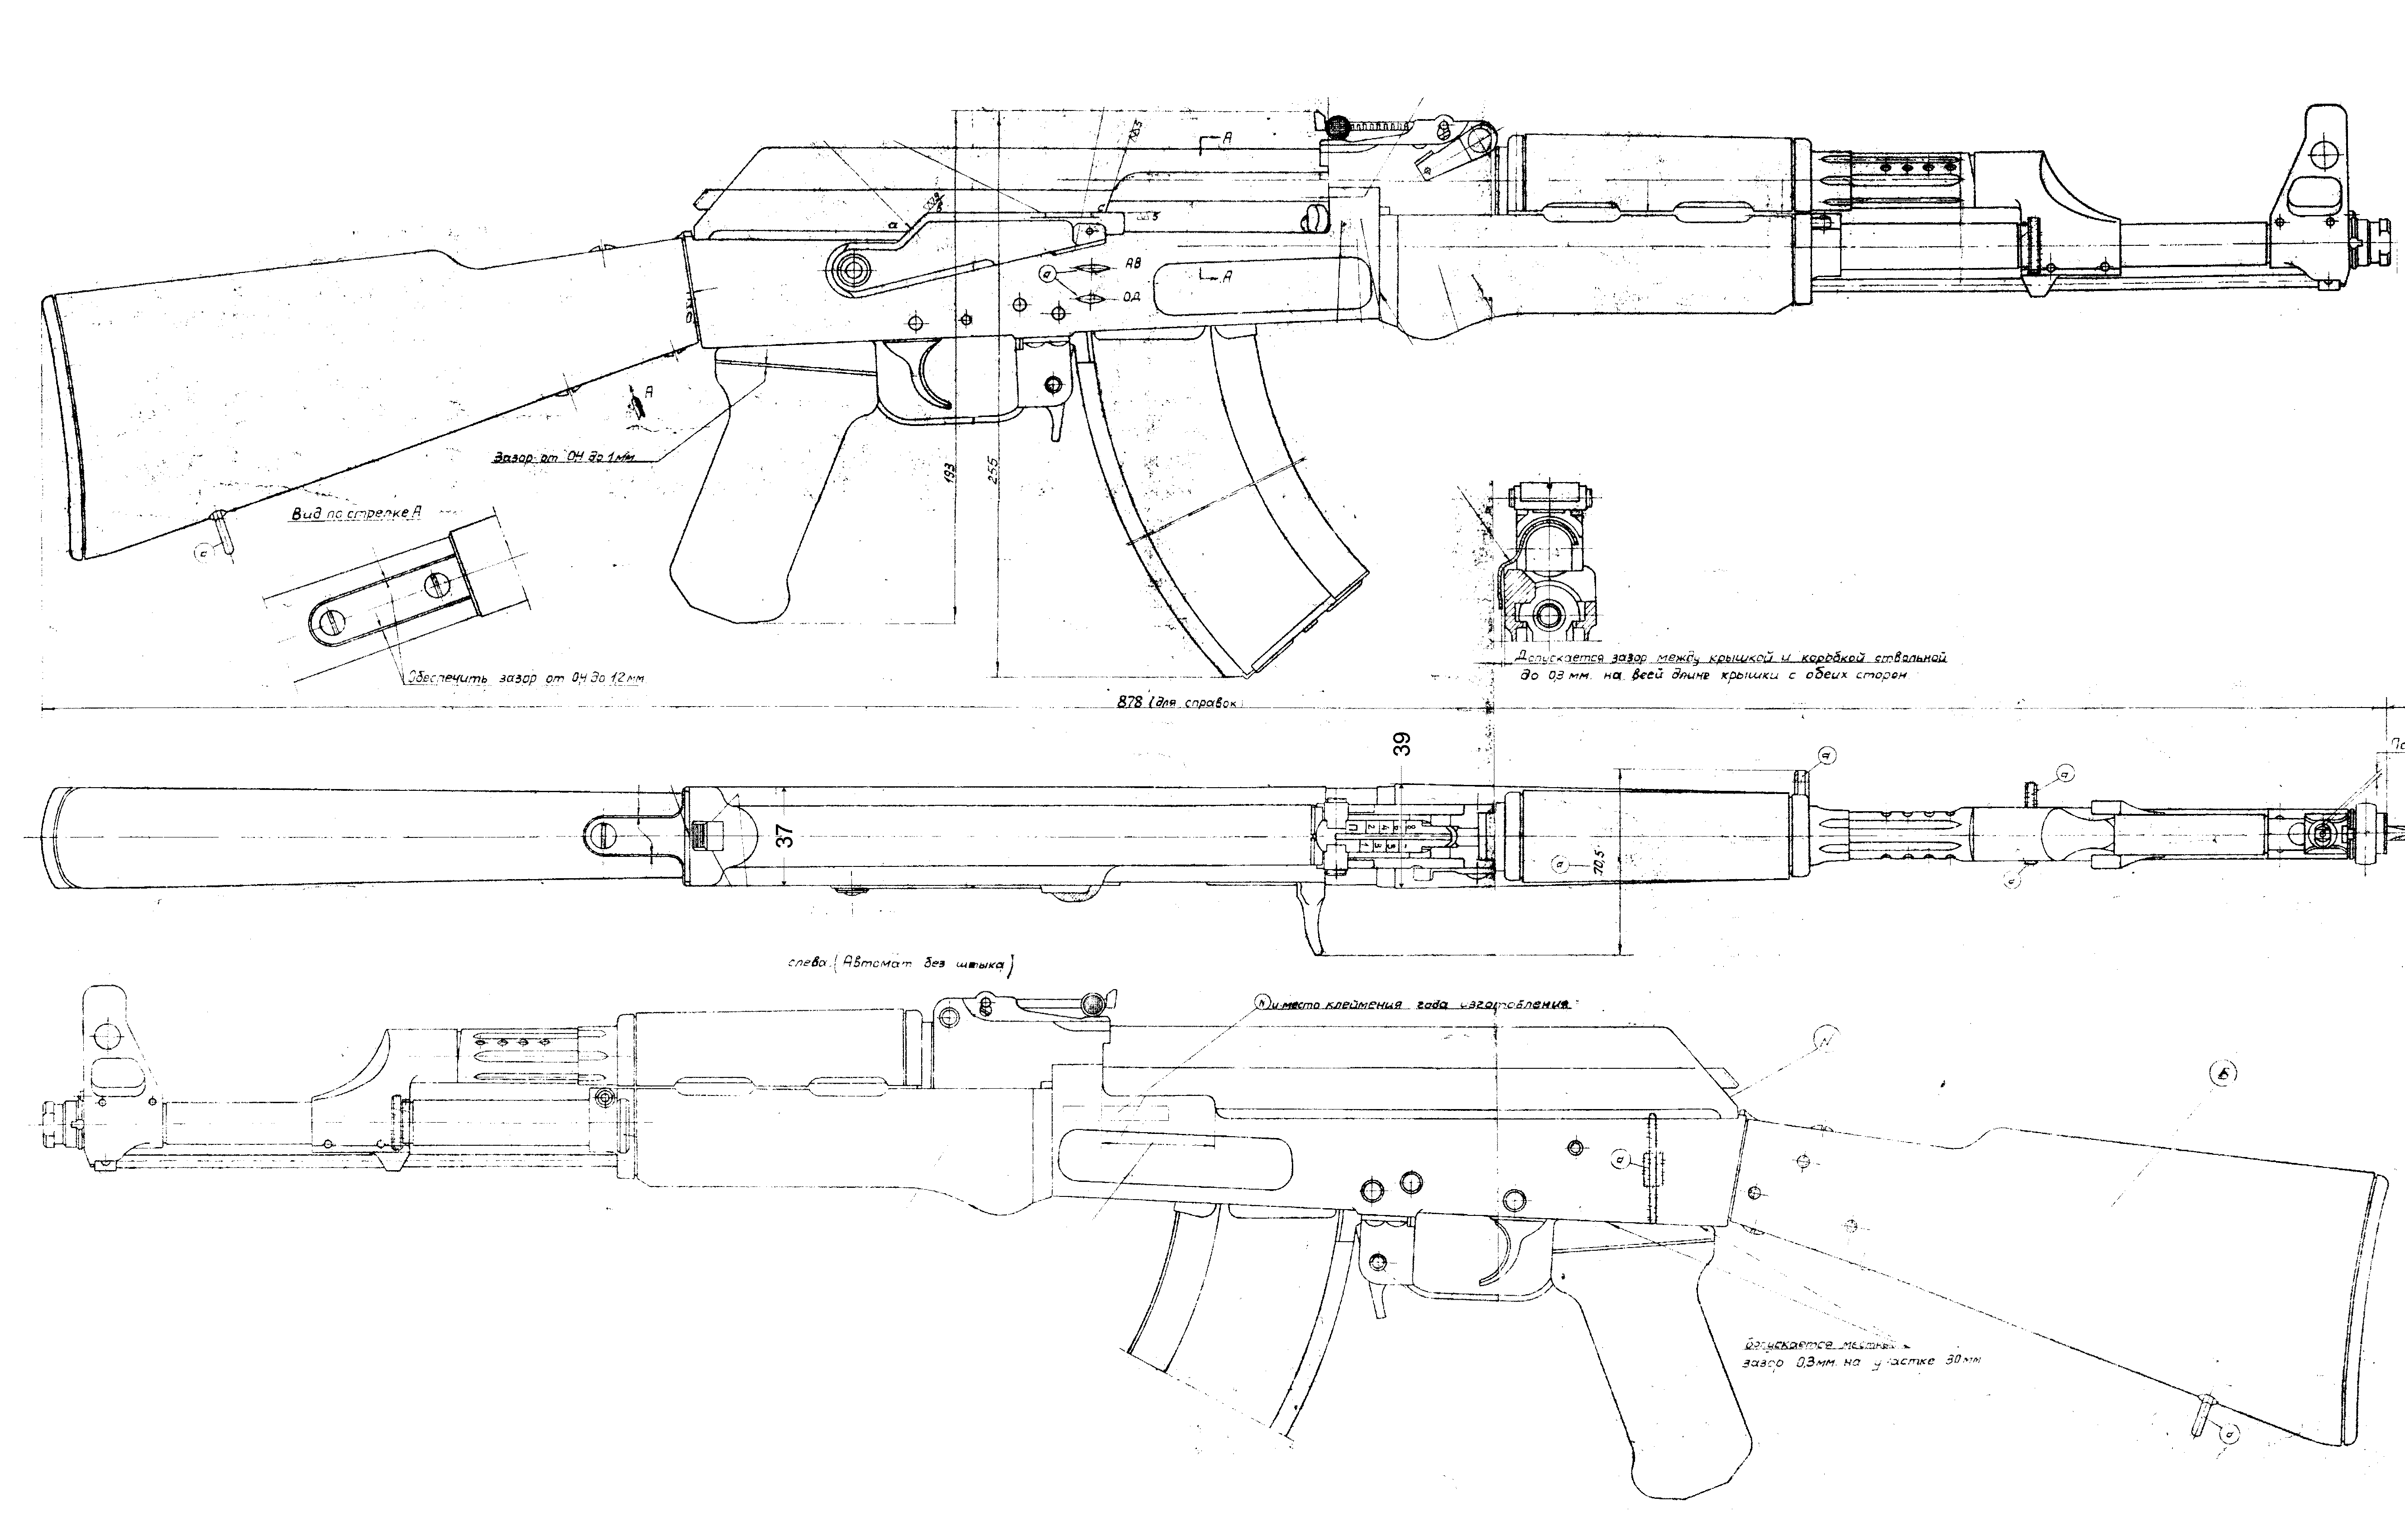 AK-47 blueprint.